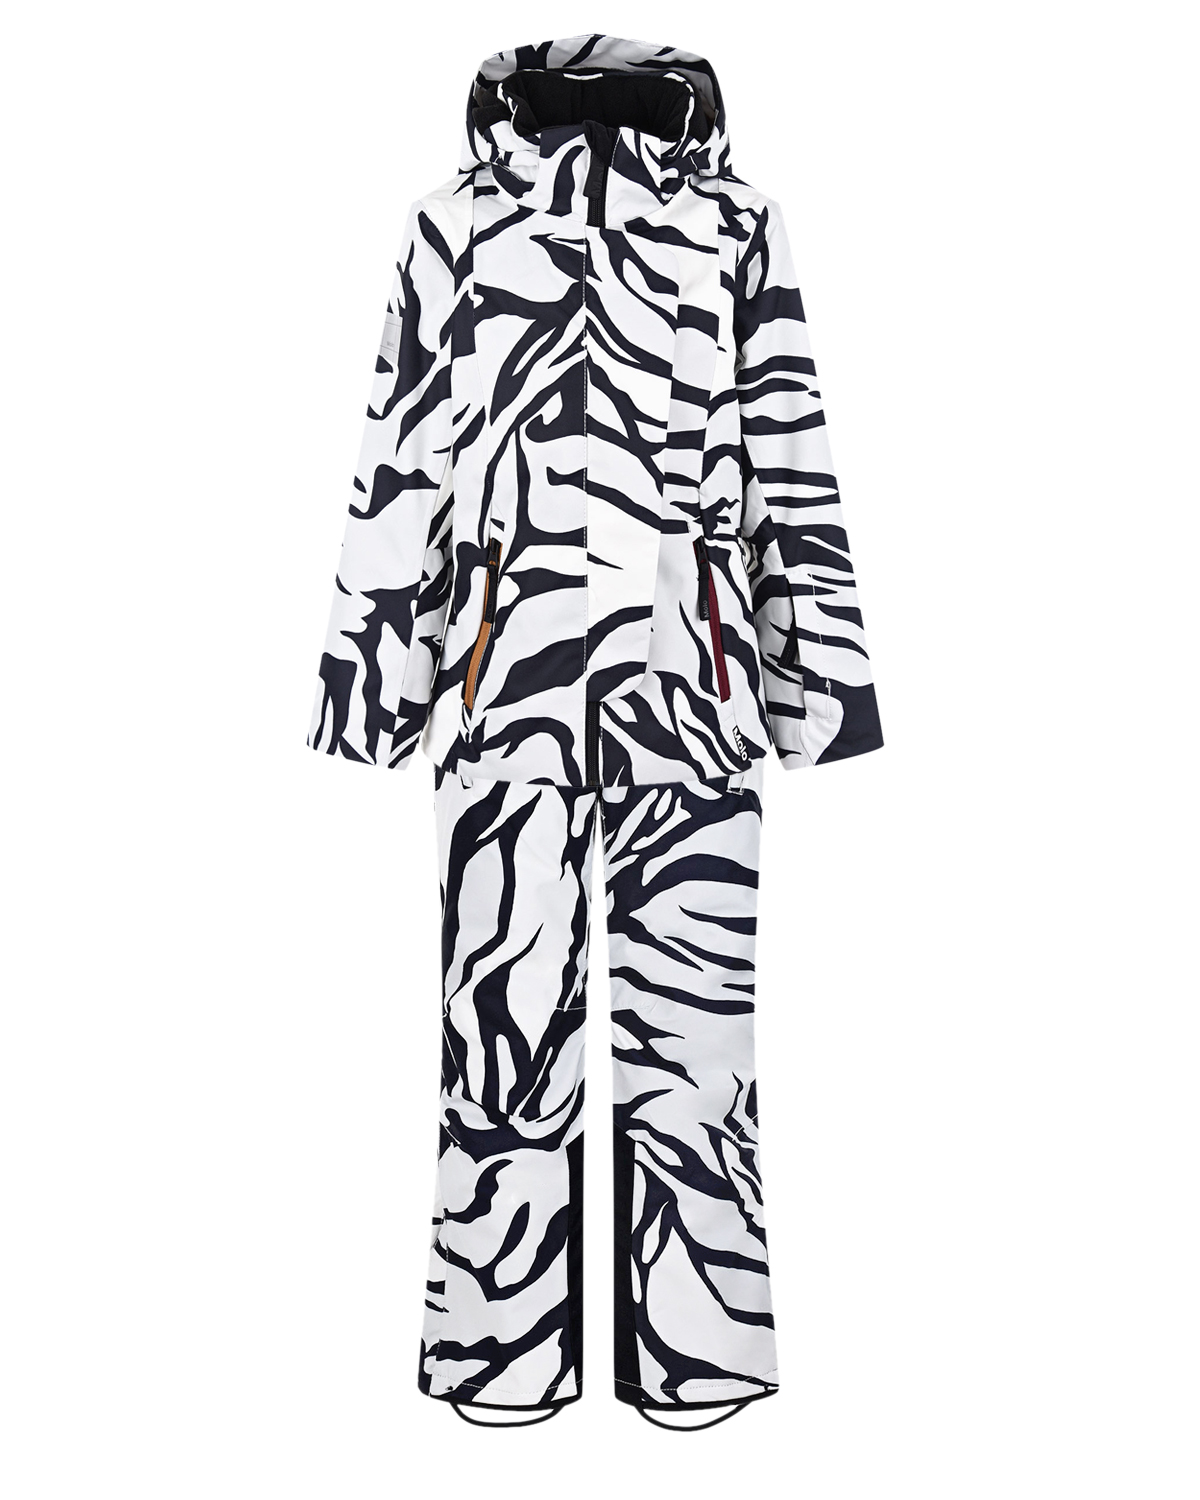 Комплект с принтом "зебра" (куртка, брюки, подтяжки) Molo детский, размер 140, цвет нет цвета